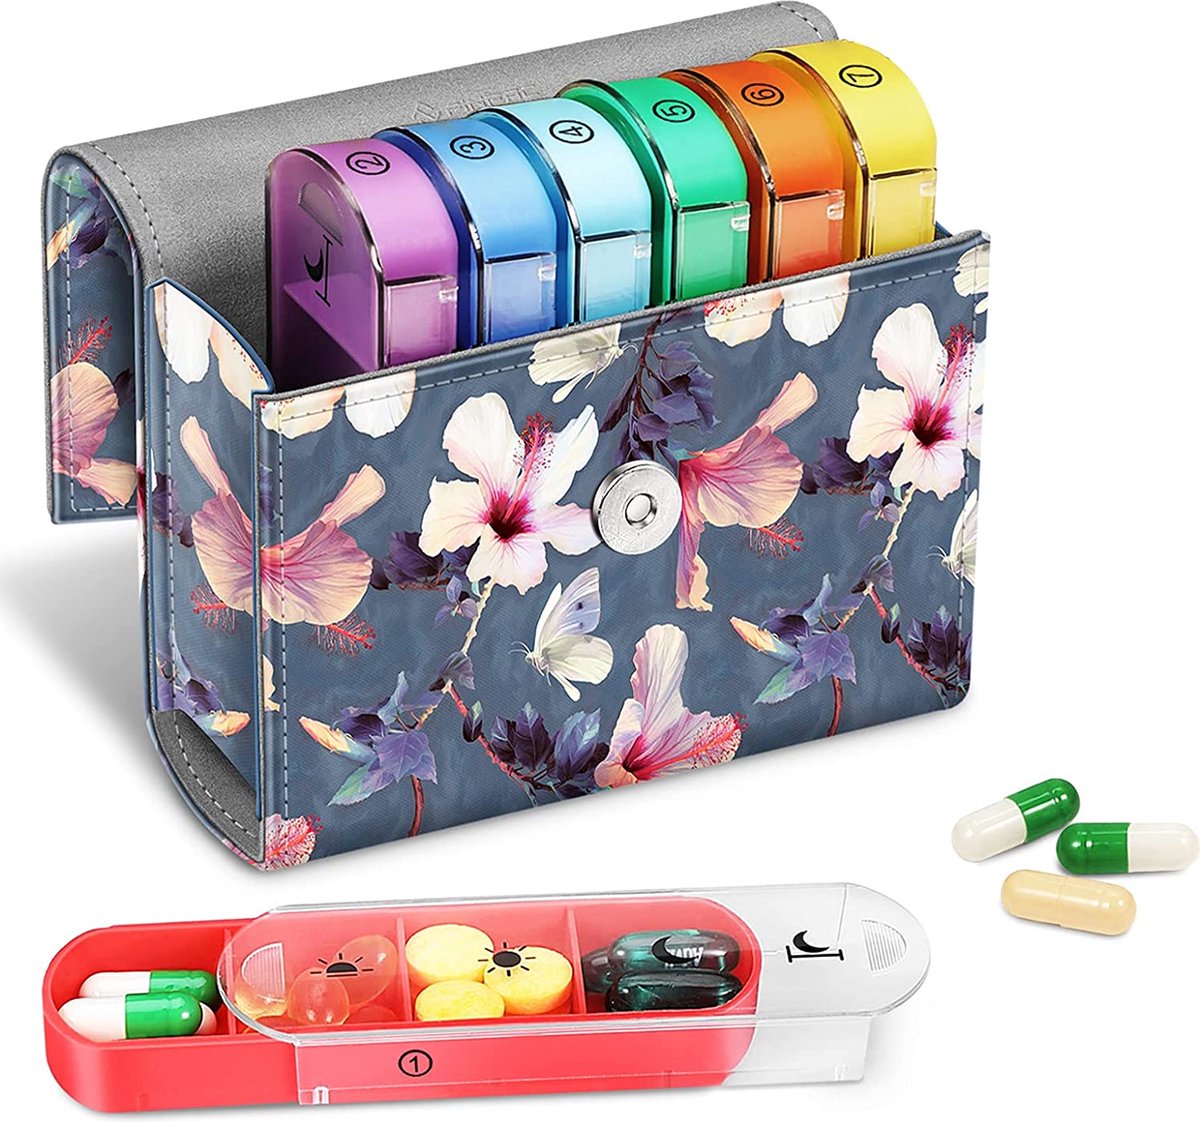 Tablettenbox 7 dagen 4 vakken - pillendoos 4 keer per dag met kunstleren tas en naamkaart medicijnbox voor pillen, vitamine visolie voor 's ochtends 's middags, 's avonds, bloeiende hibiscus